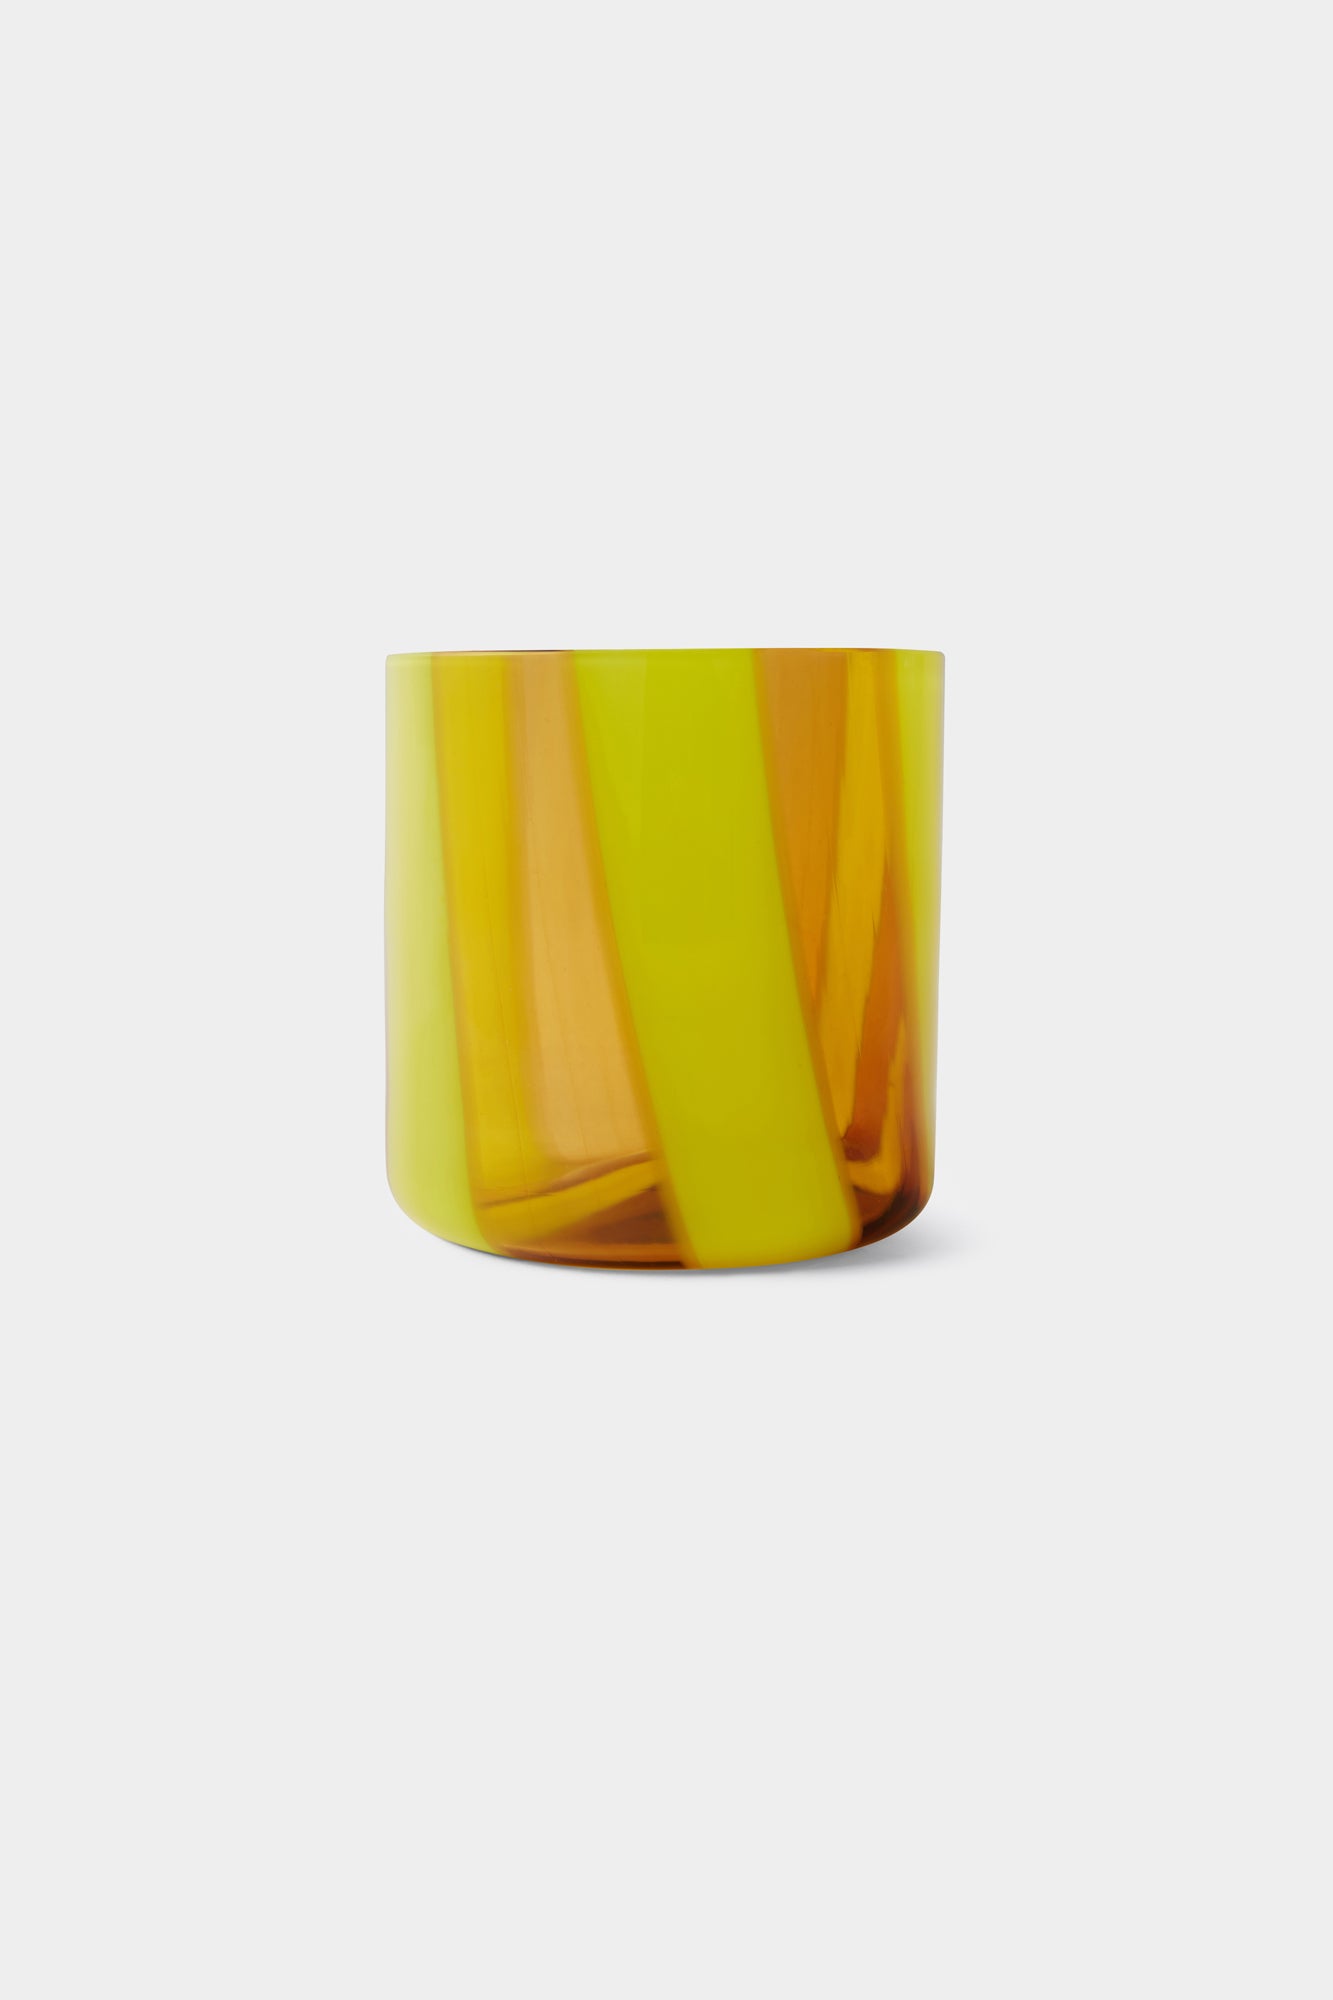 YELLOW AND TRANSPARENT YELLOW MURANO GLASS